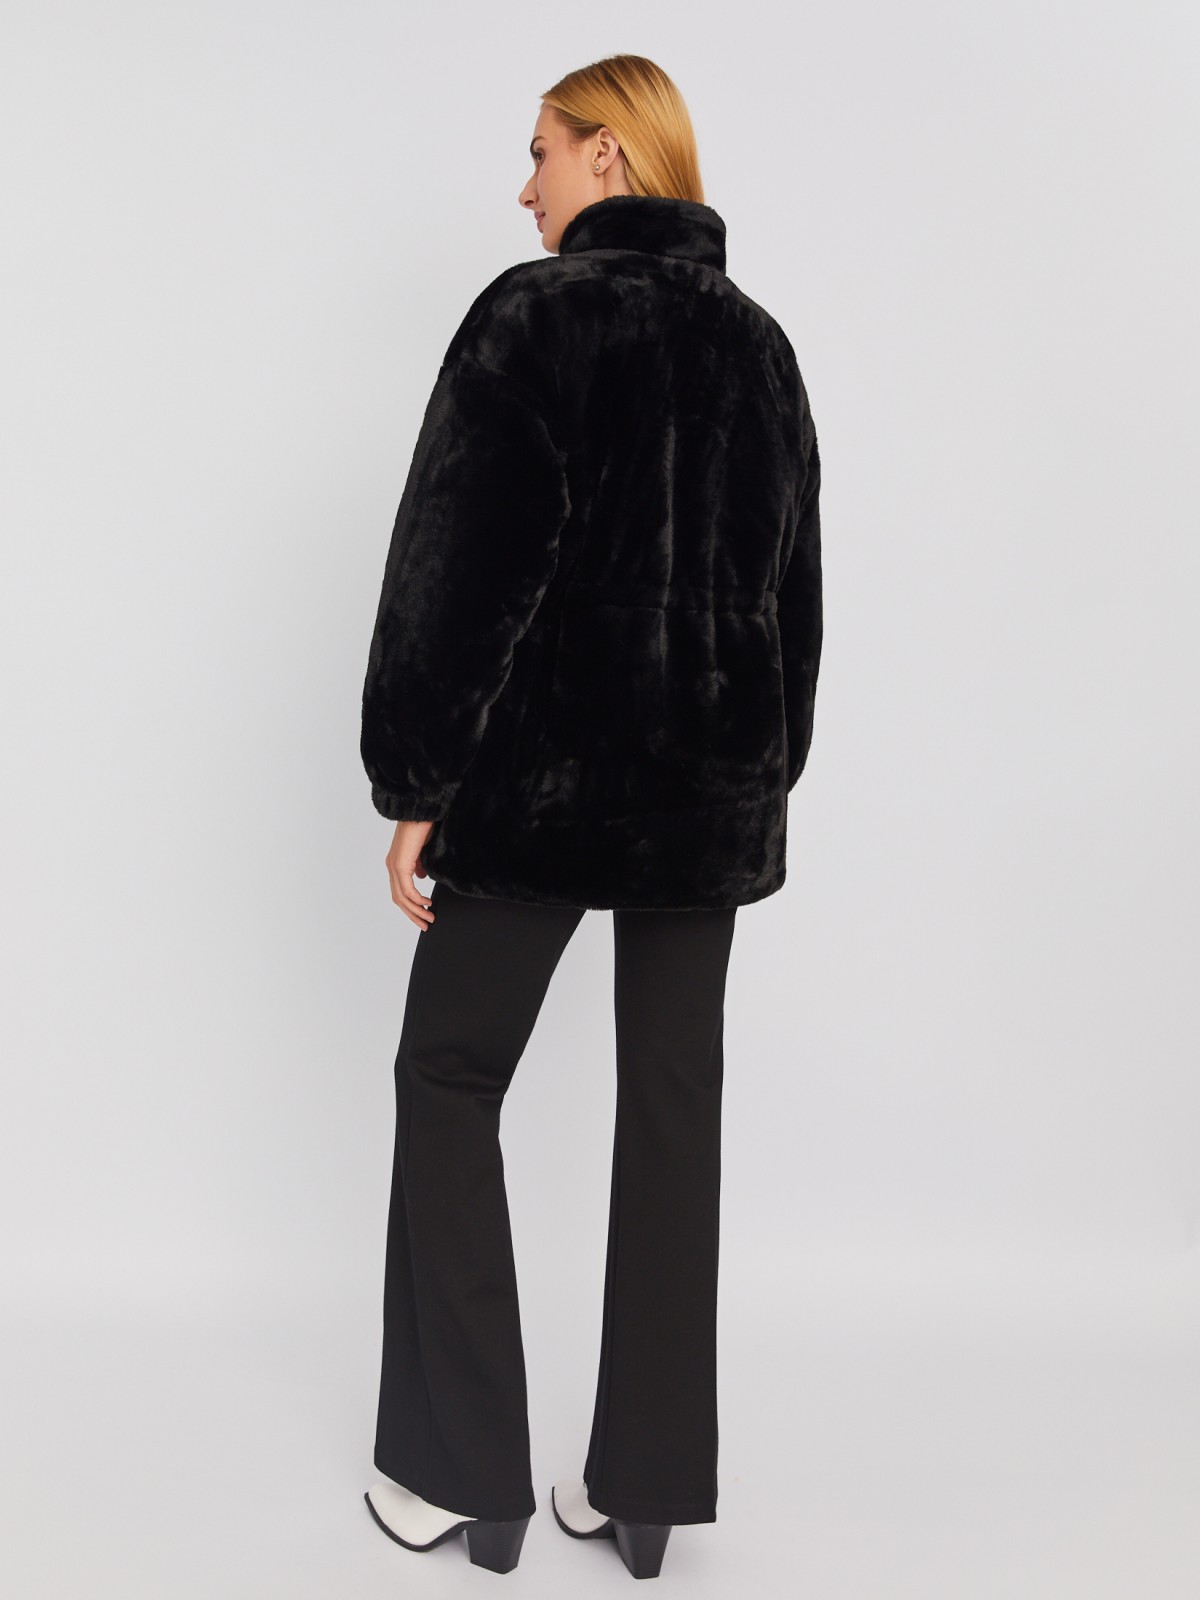 Тёплая куртка-шуба из искусственного меха на синтепоне с регулируемой талией zolla 023335550104, цвет черный, размер S - фото 6